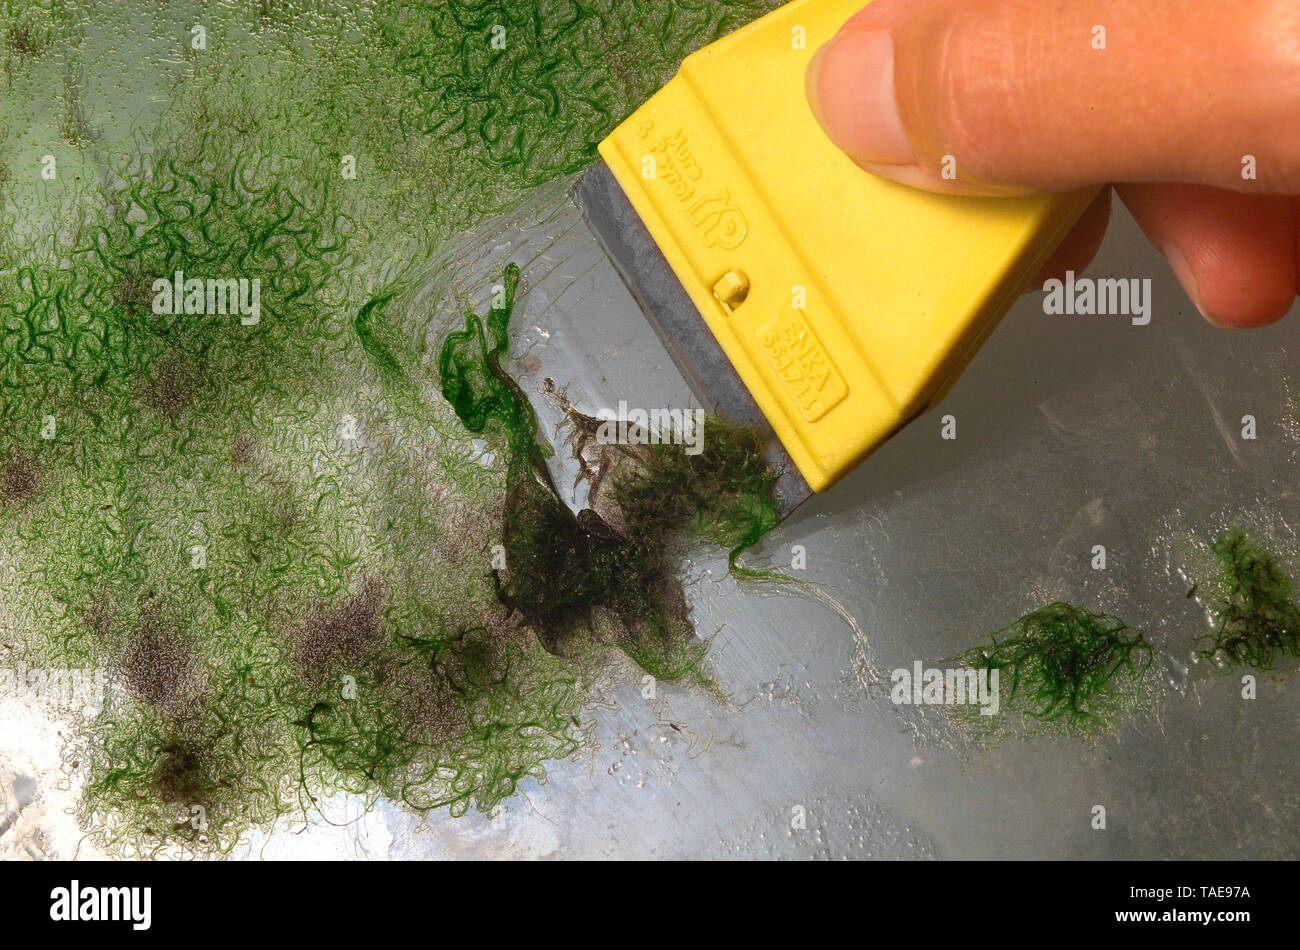 Removing algae from aquarium glass Stock Photo